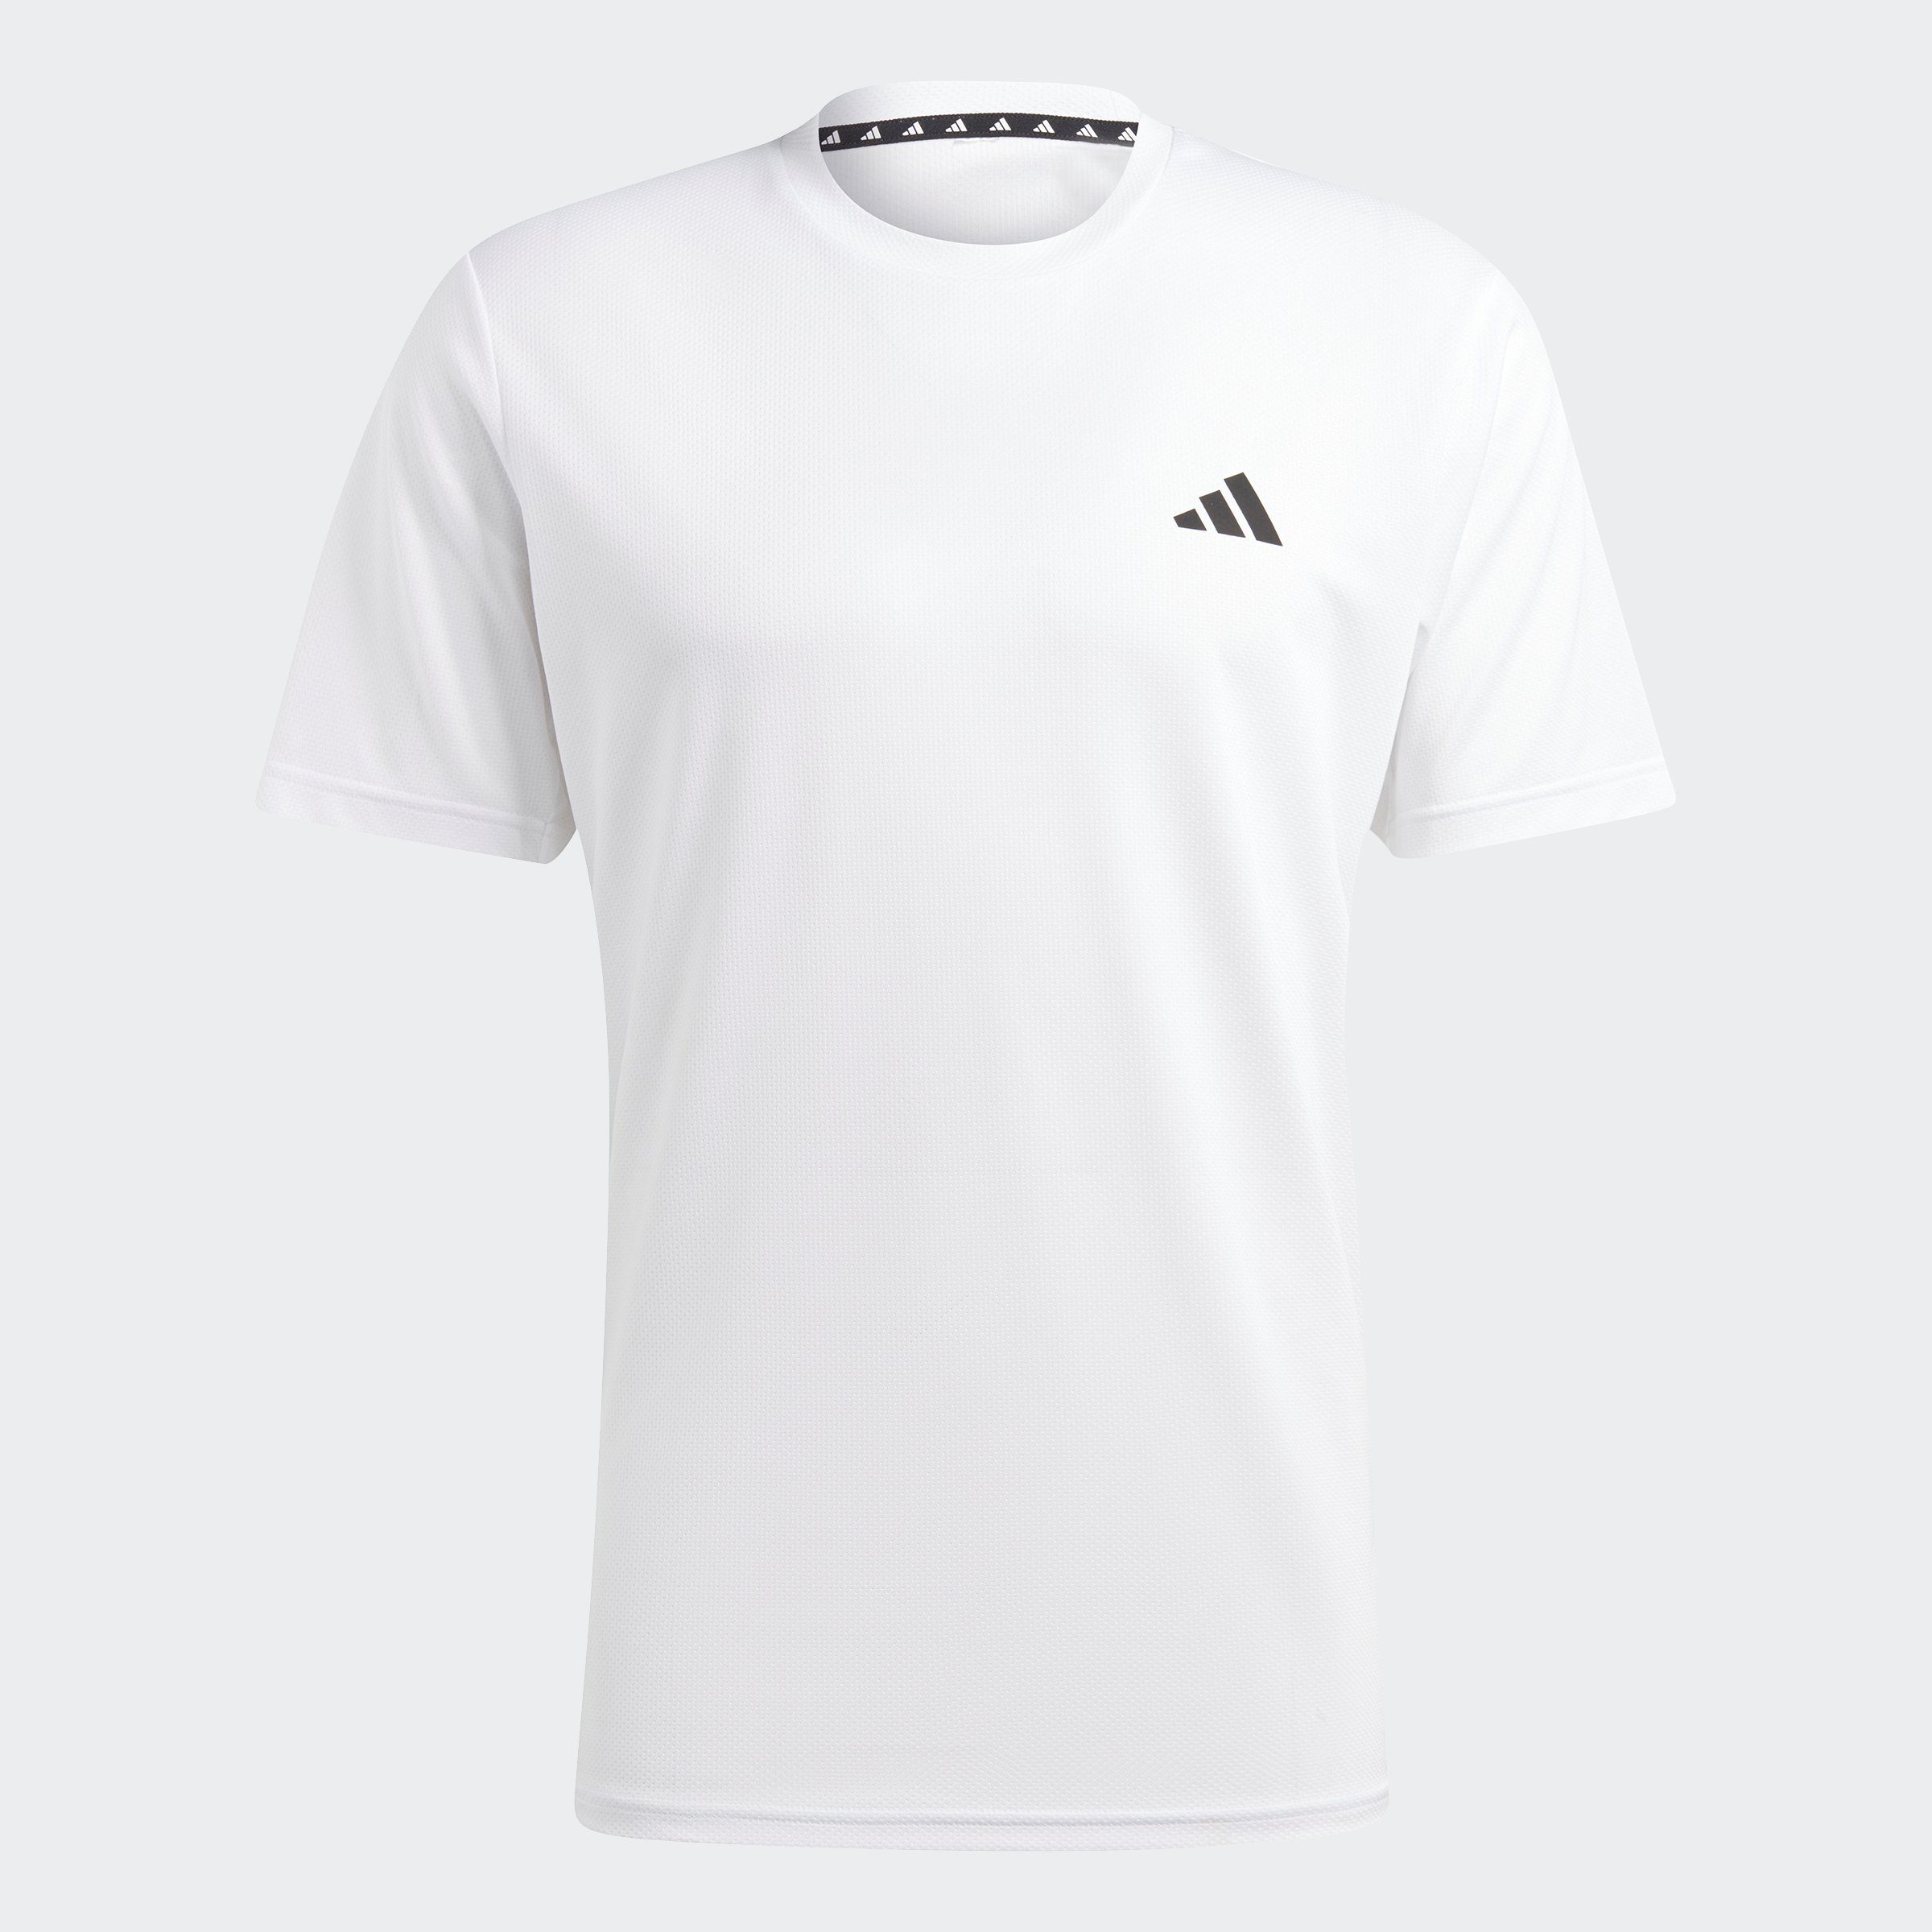 adidas / TRAIN White Performance T-Shirt ESSENTIALS Black TRAINING